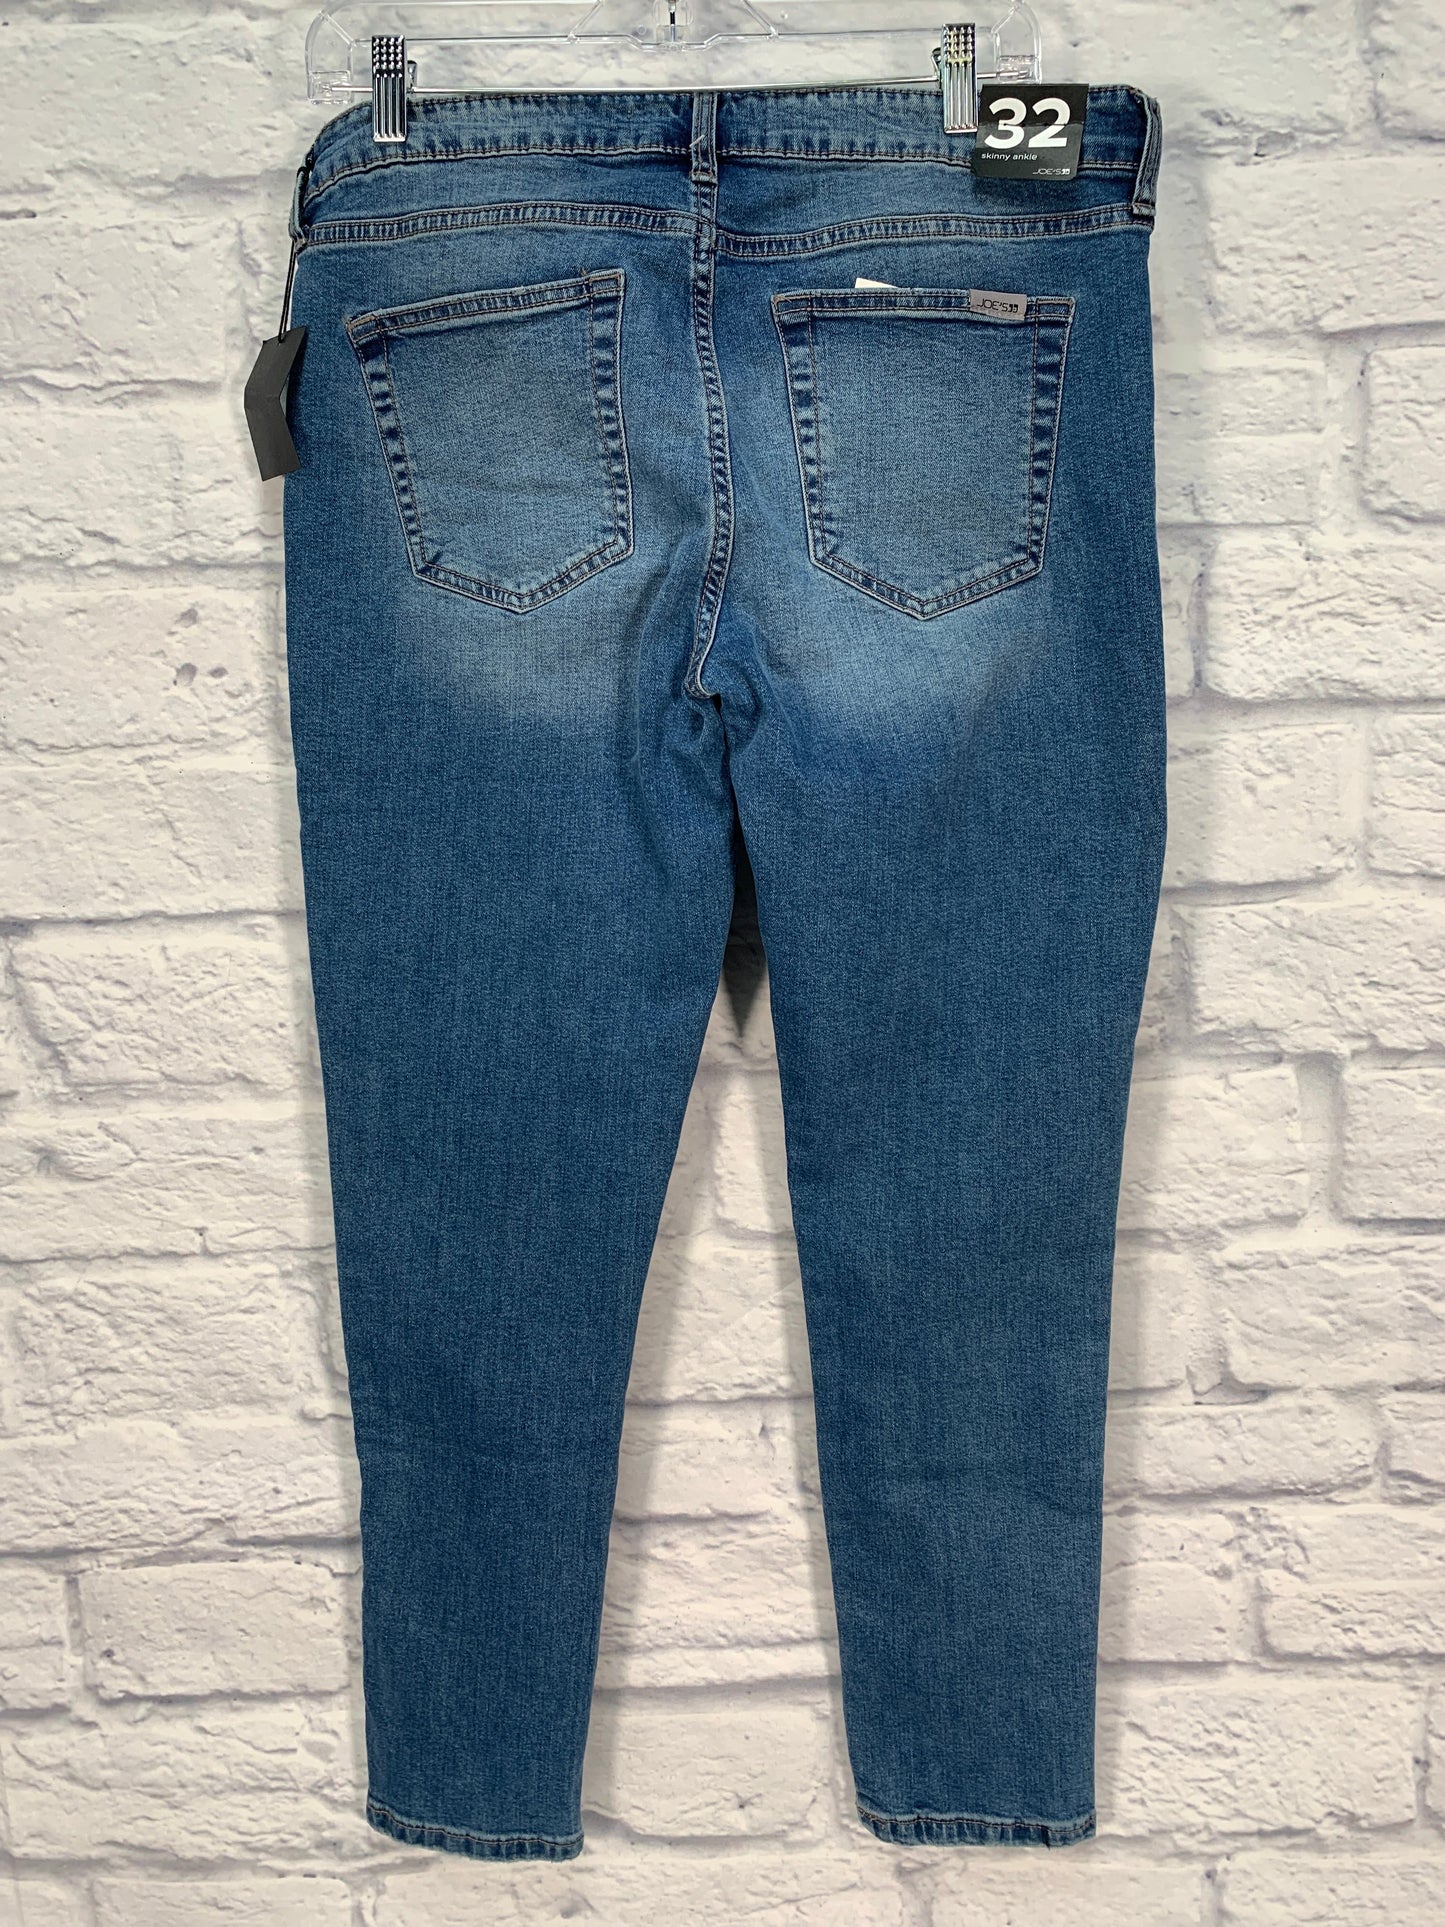 Blue Denim Jeans Designer Joes Jeans, Size 14